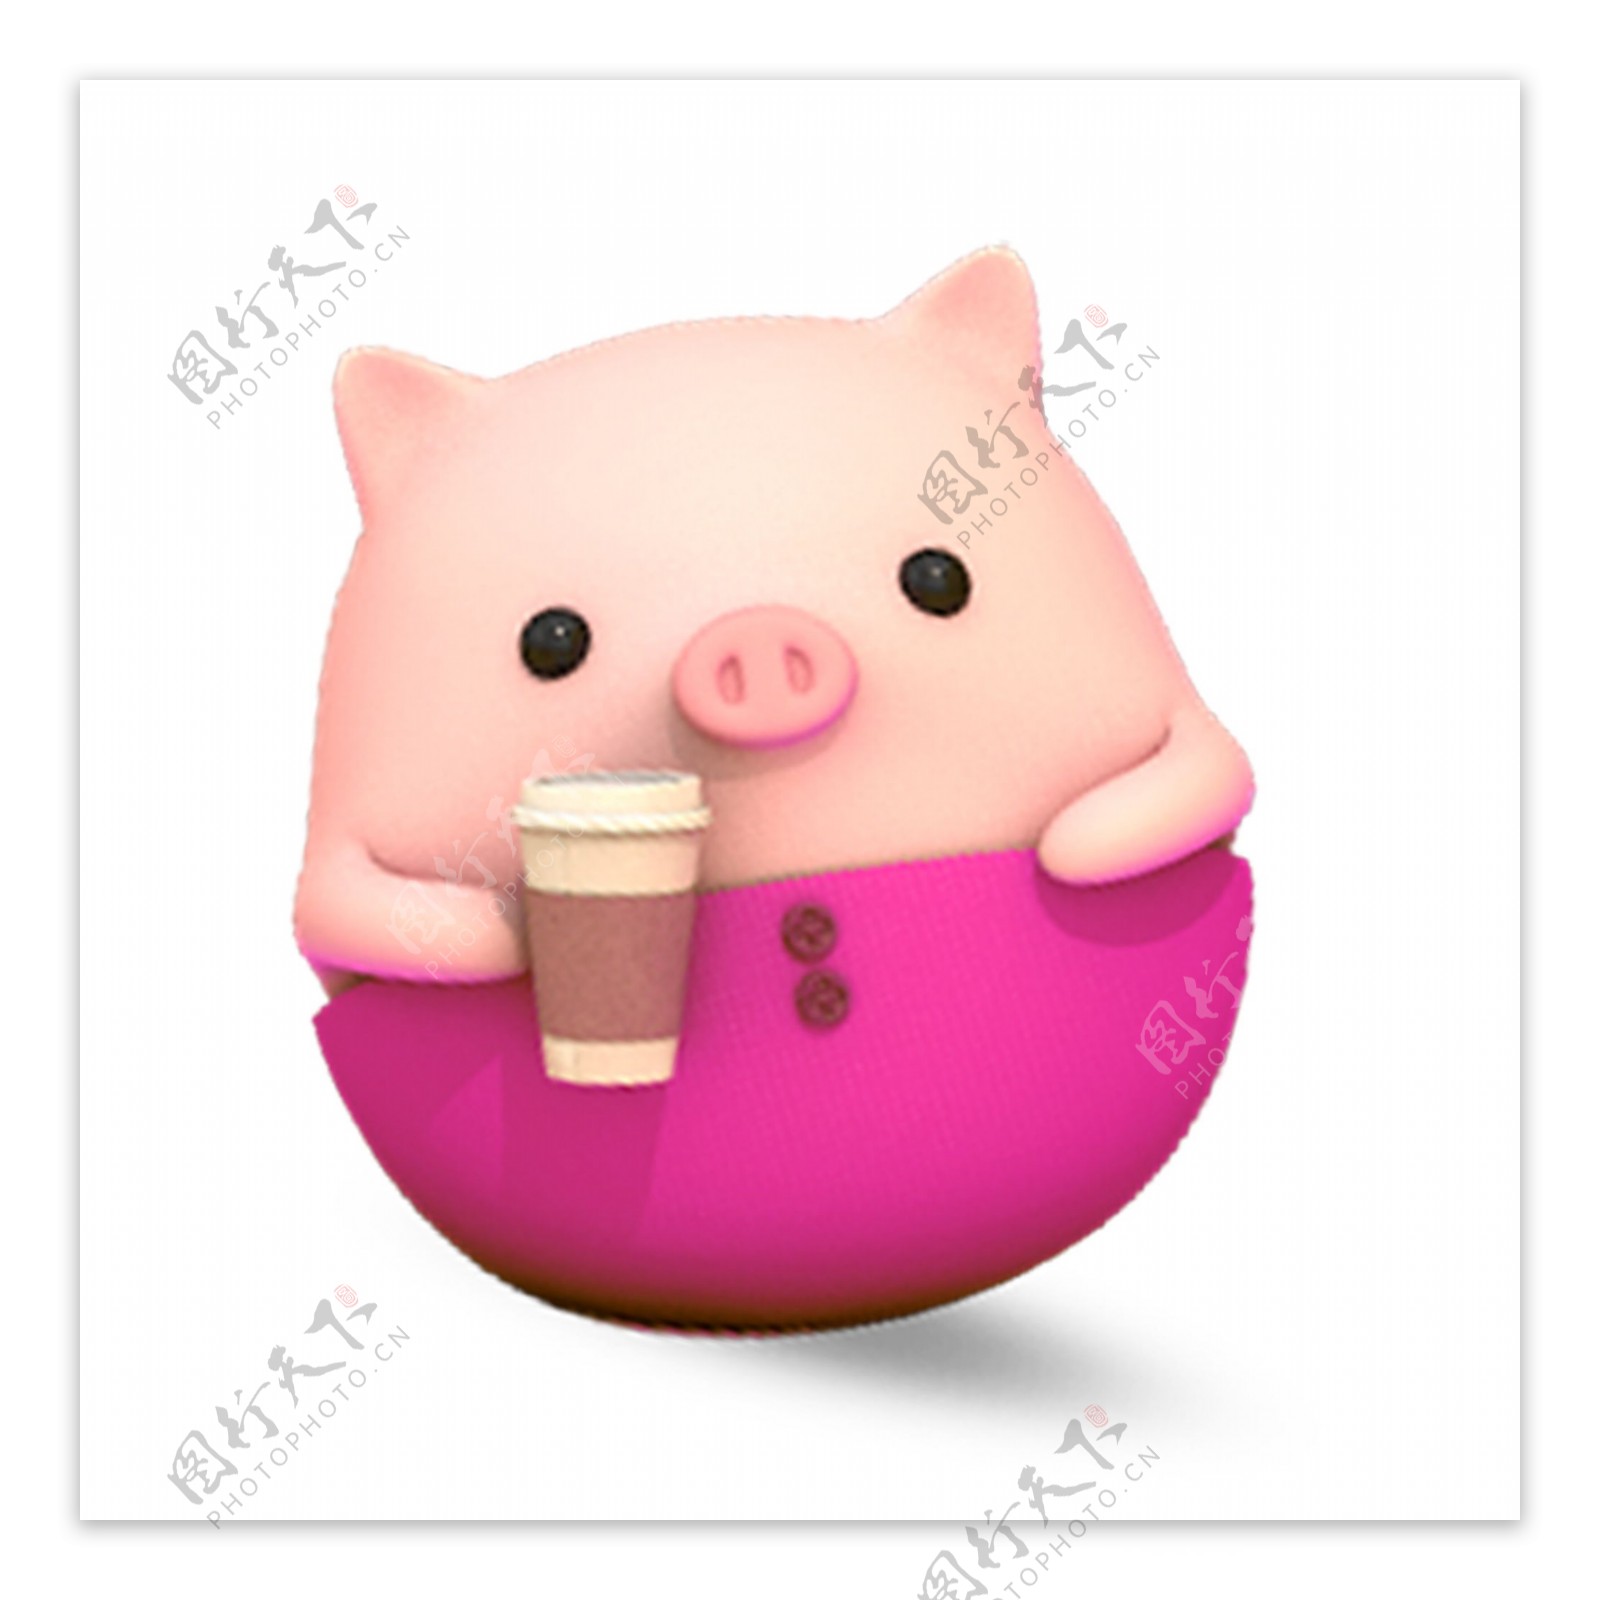 可爱2019猪年猪形象元素设计